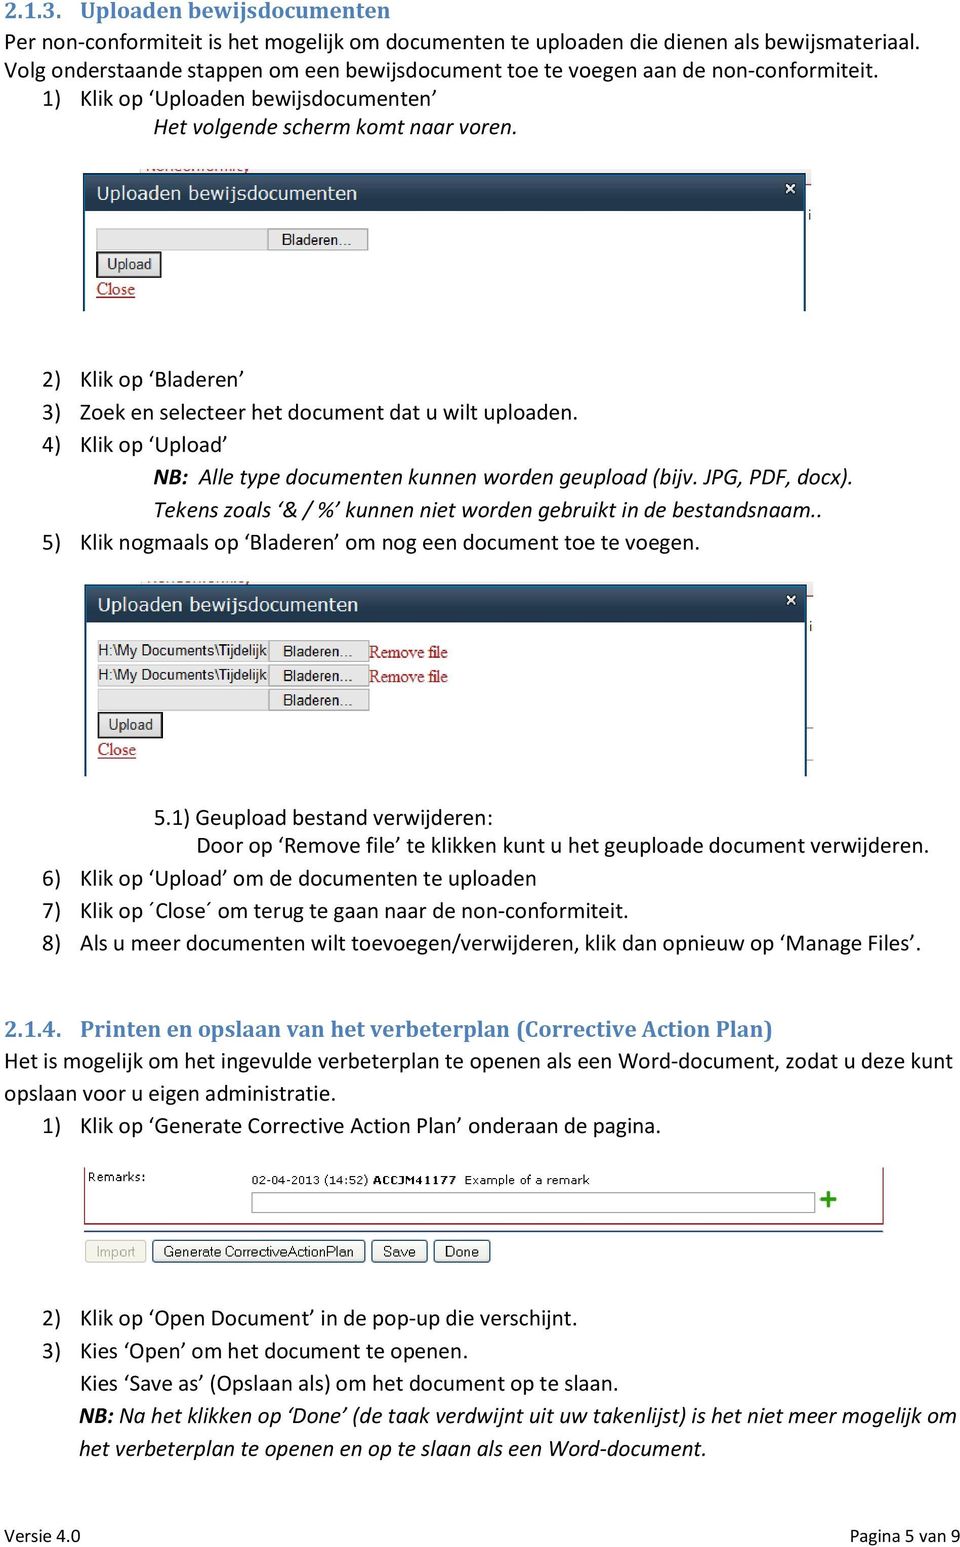 4) Klik op Upload NB: Alle type documenten kunnen worden geupload (bijv. JPG, PDF, docx). Tekens zoals & / % kunnen niet worden gebruikt in de bestandsnaam.